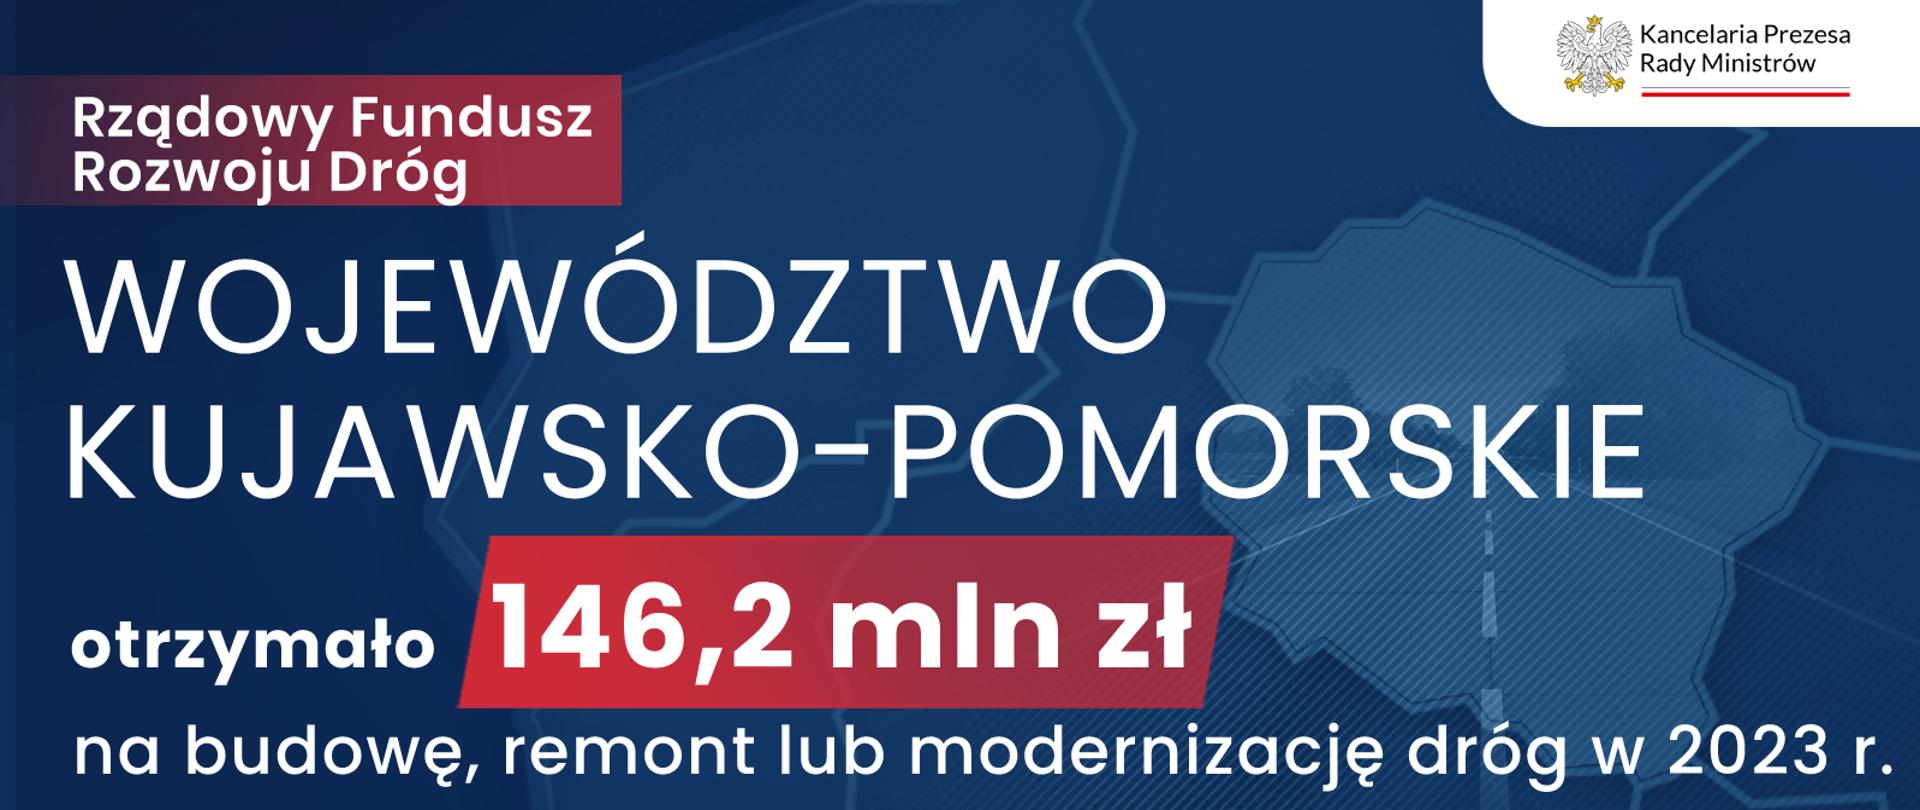 Rządowy Fundusz Rozwoju Dróg 2023 - Województwo kujawsko-pomorskie otrzymało 146, 2 mln zł na budowę, remont lub modernizację dróg w 2023 r.